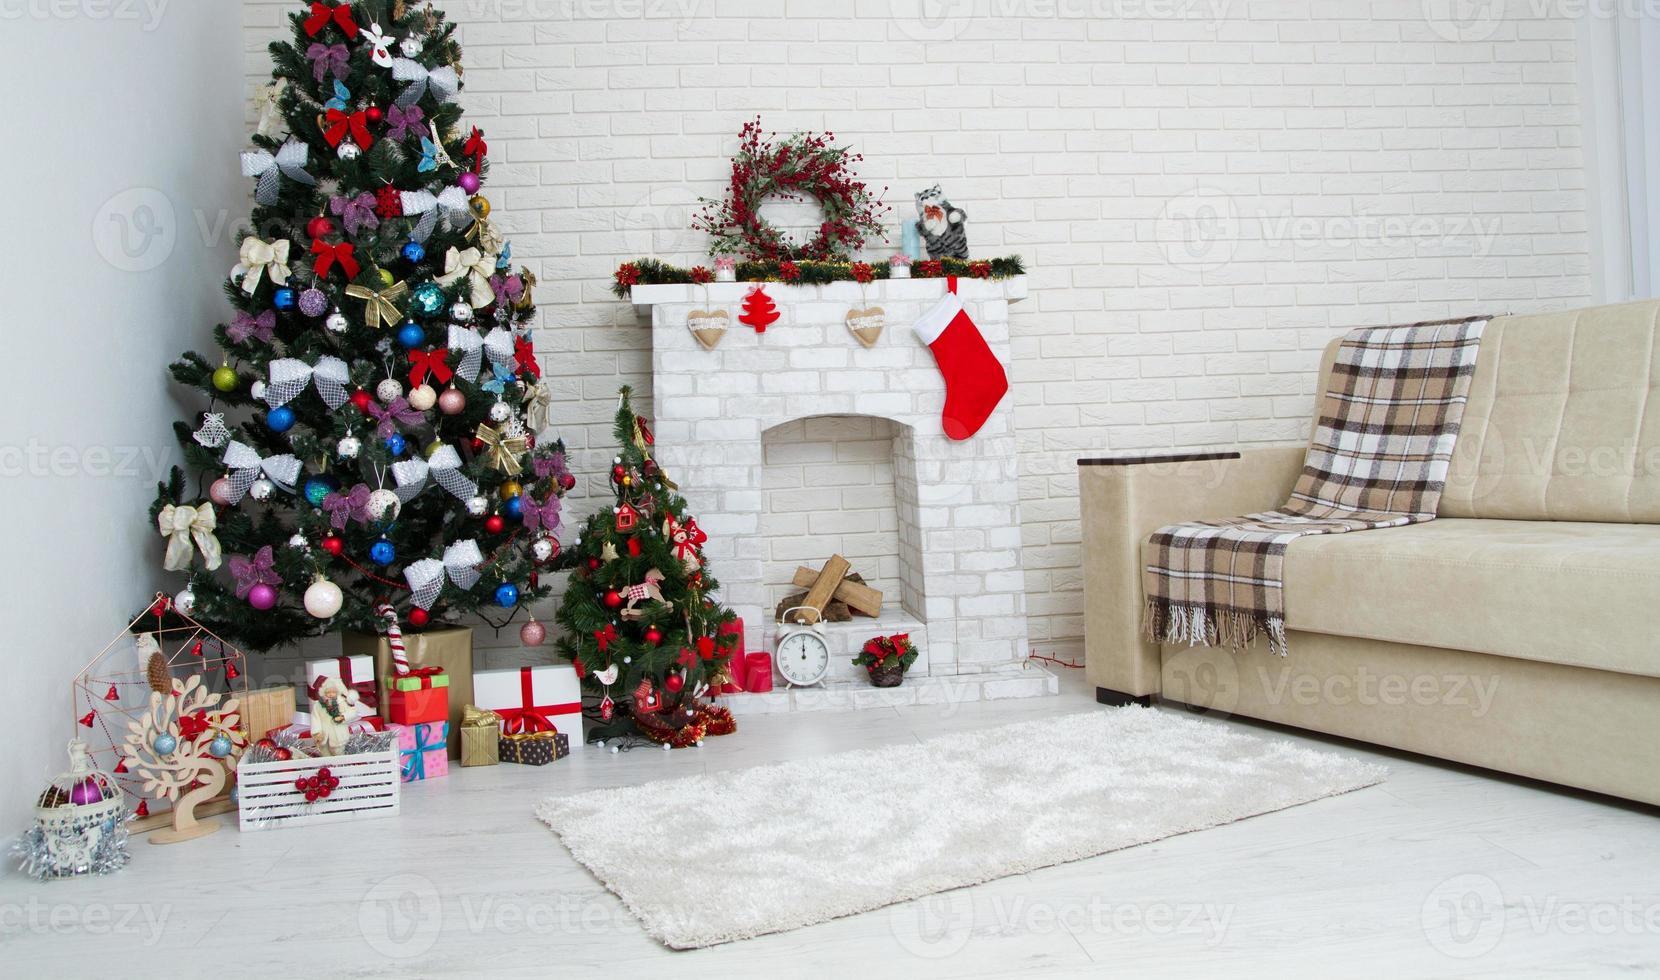 kerst woonkamer met een kerstboom en cadeautjes eronder - moderne klassieke stijl, nieuwjaarsconcept foto